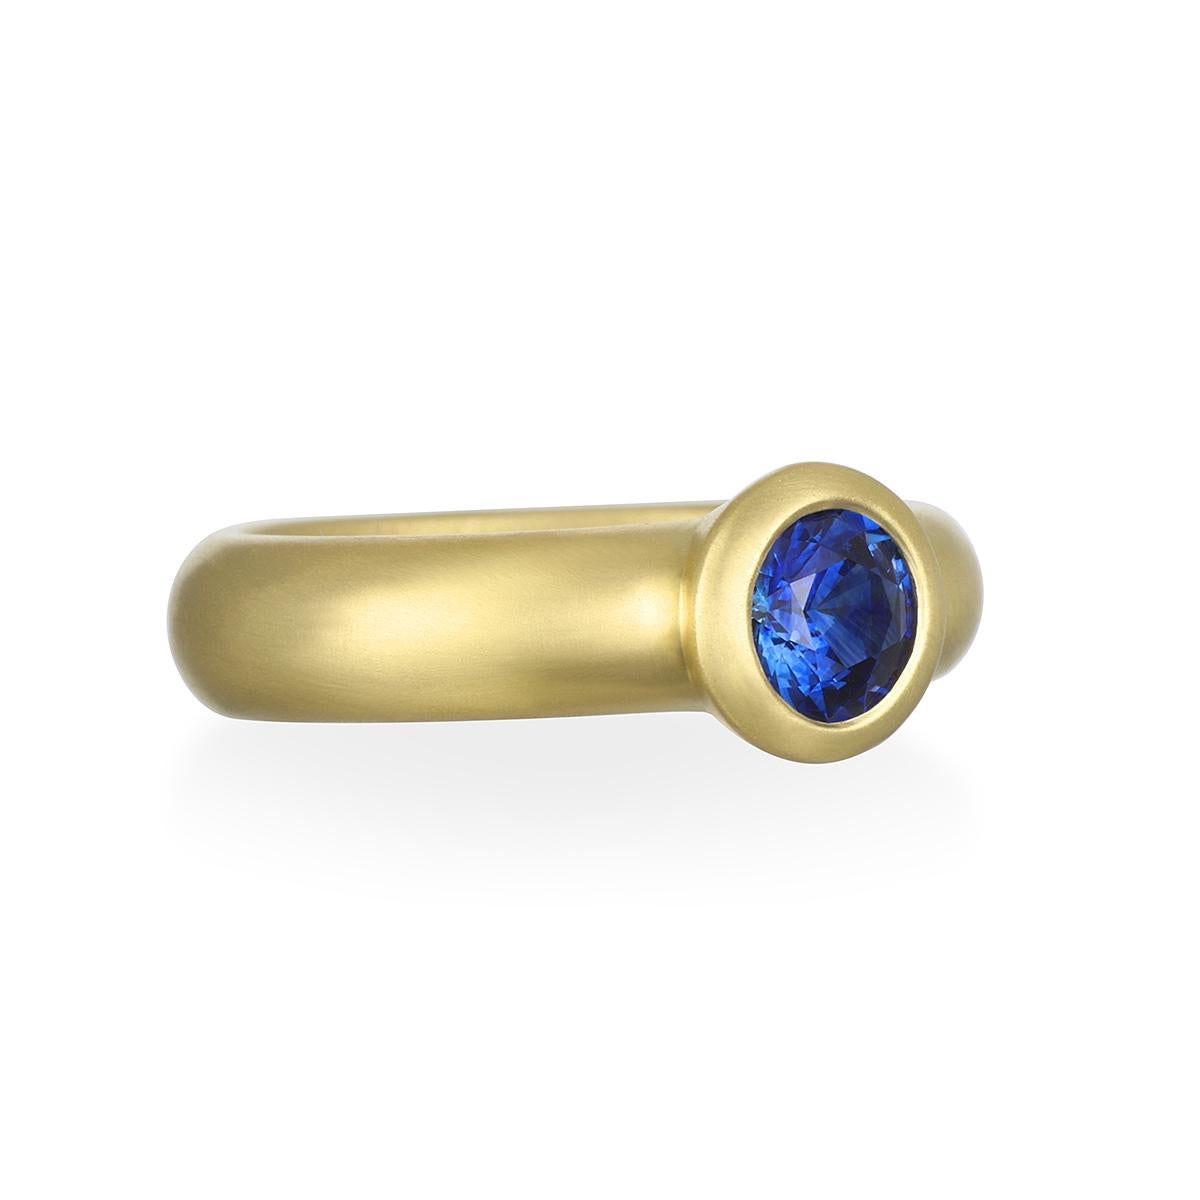 Dieser runde Ring mit Ceylonblauem Saphir in einem wunderschönen, leuchtenden Blauton ist in 18-karätigem Gold* gefasst und hat eine matte Oberfläche für einen klaren, zeitlosen Look. Er kann als Einzelstück getragen oder mit anderen Ringen